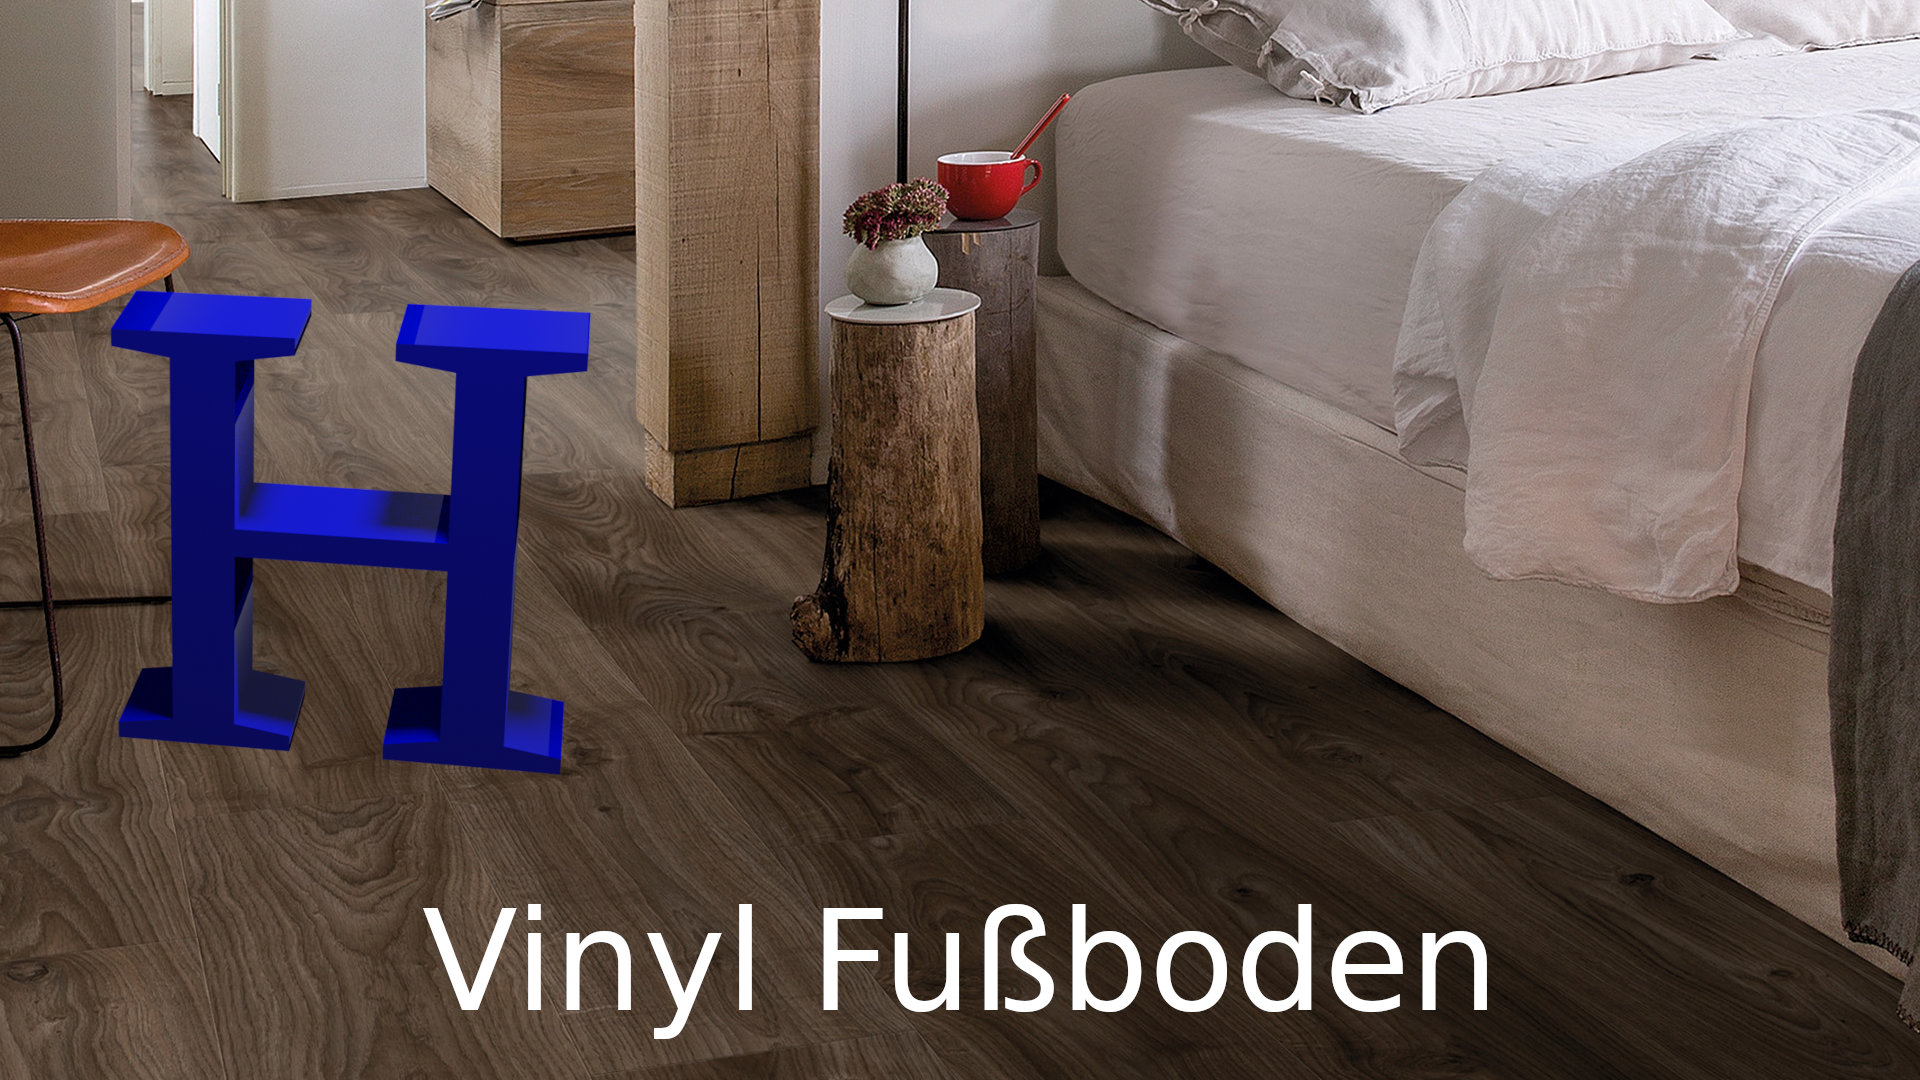 Vinyl Fußboden zur Klick Verlegung & direkten Verklebung